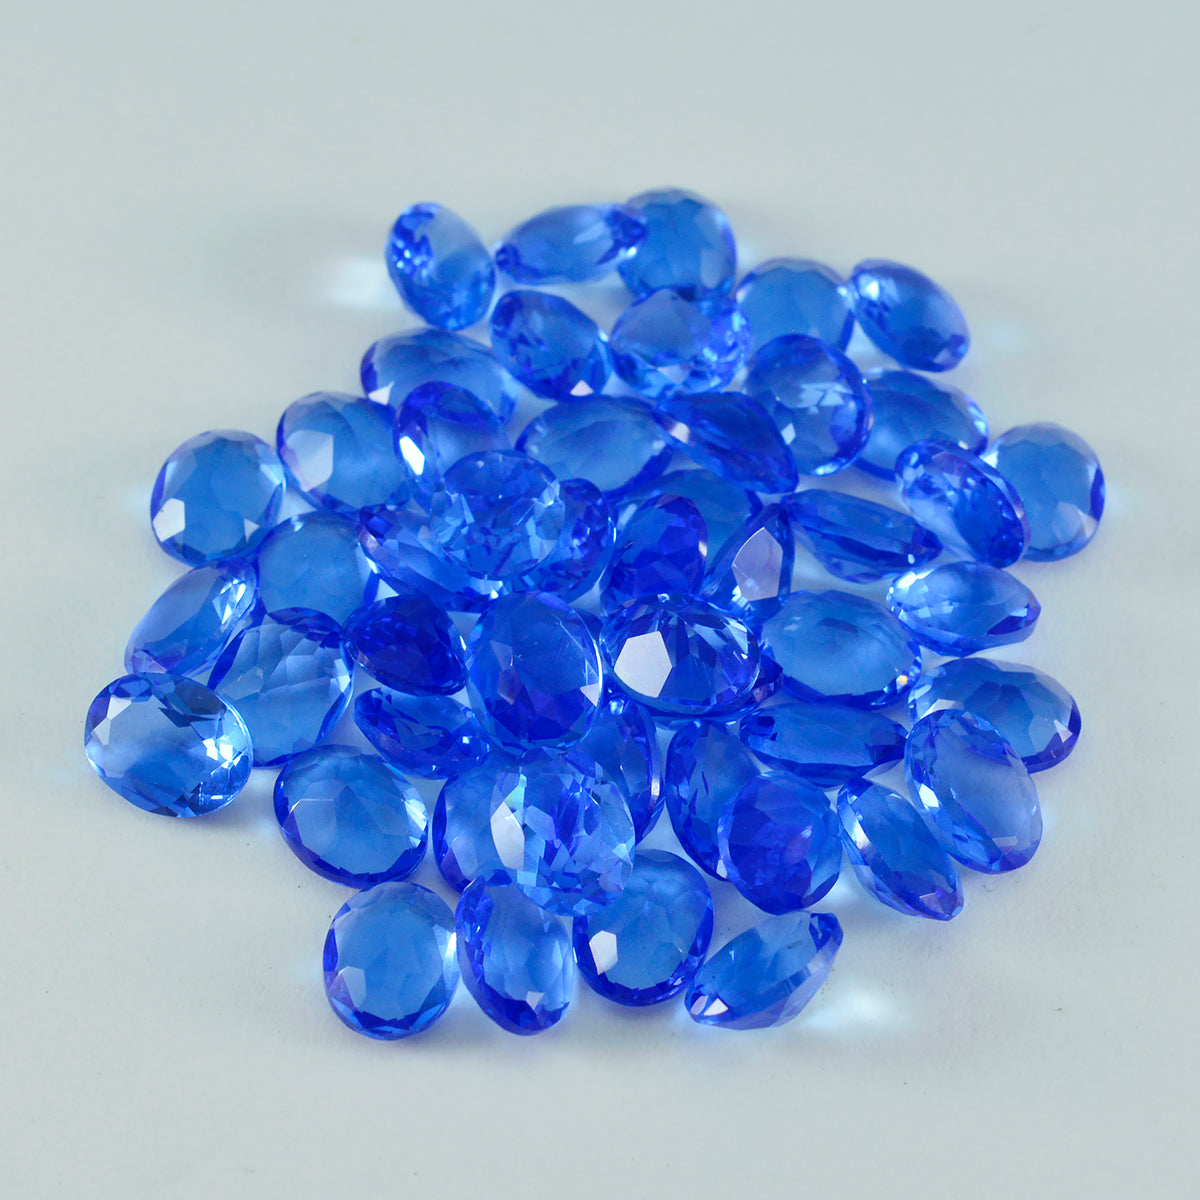 Riyogems 1 pc saphir bleu cz facettes 3x5 mm forme ovale aa qualité pierres précieuses en vrac